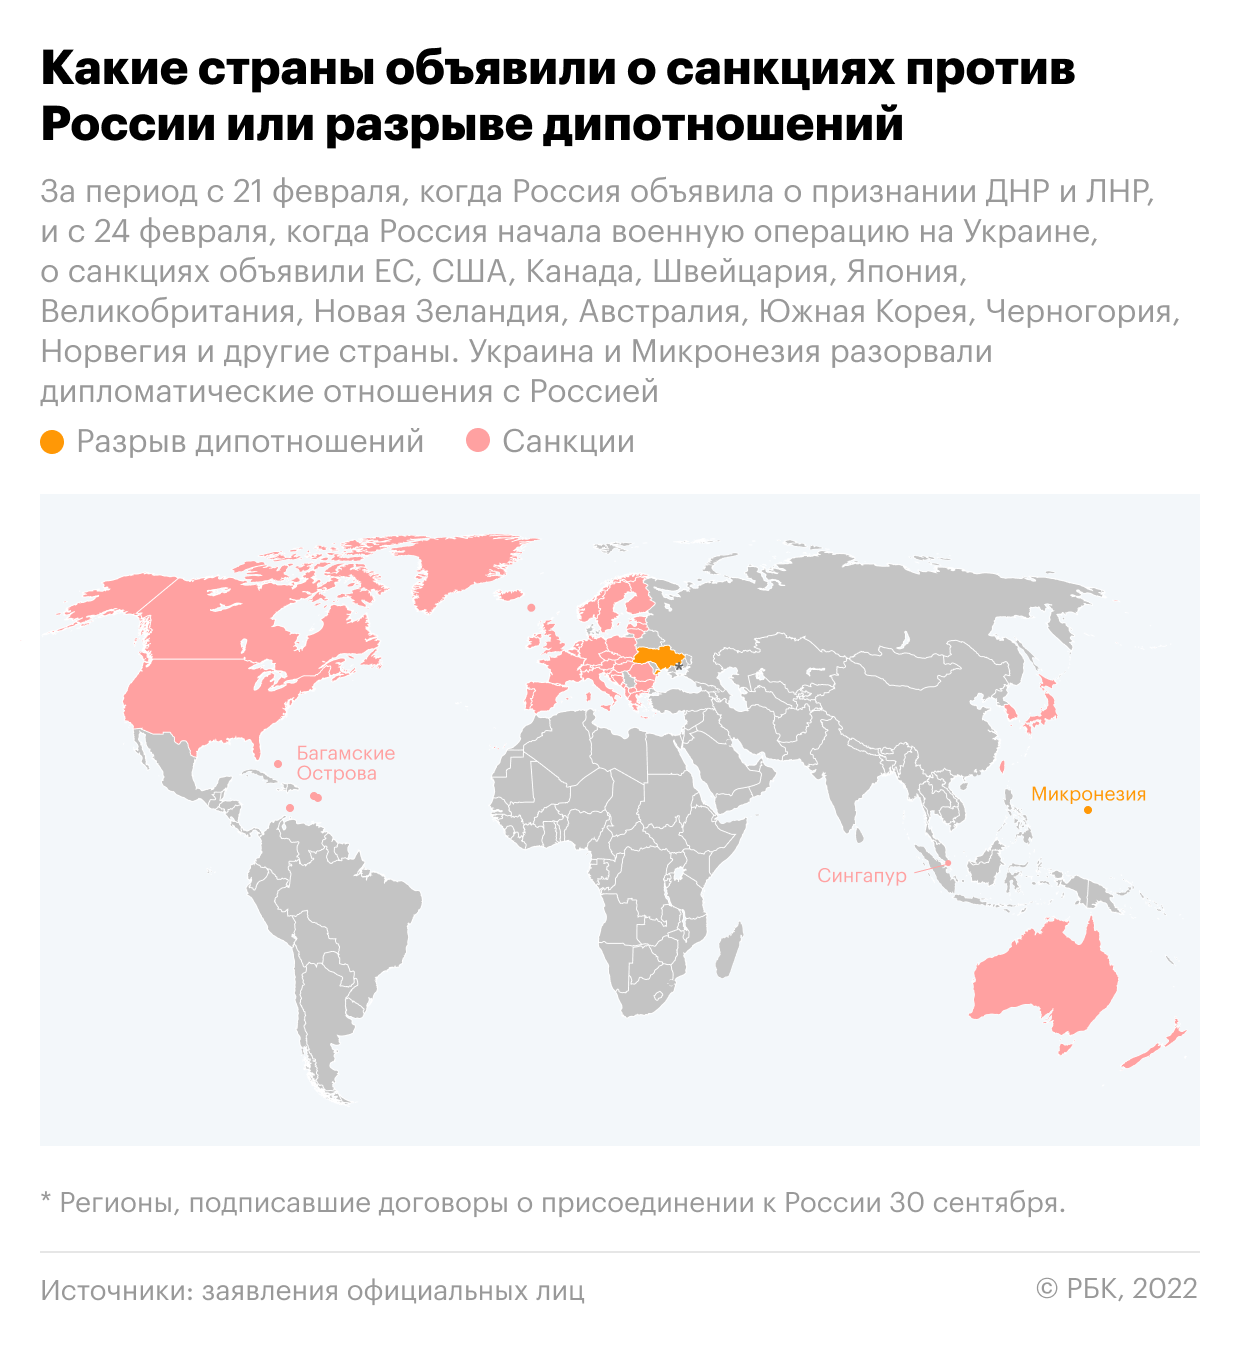 Какие страны объявили о санкциях и разрыве дипотношений с Россией. Карта